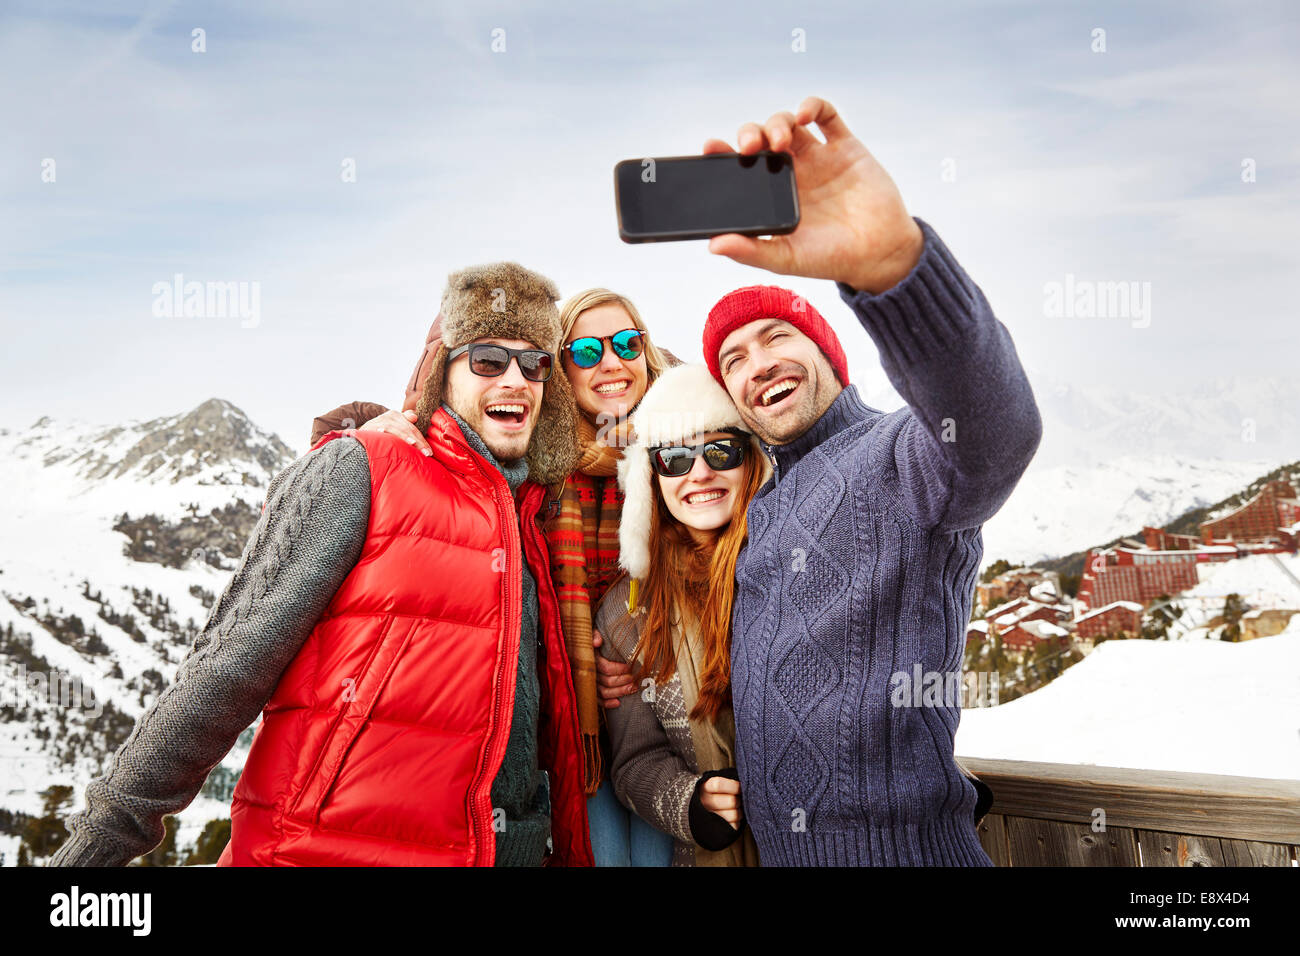 Les amis de prendre photo ensemble dans la neige Banque D'Images